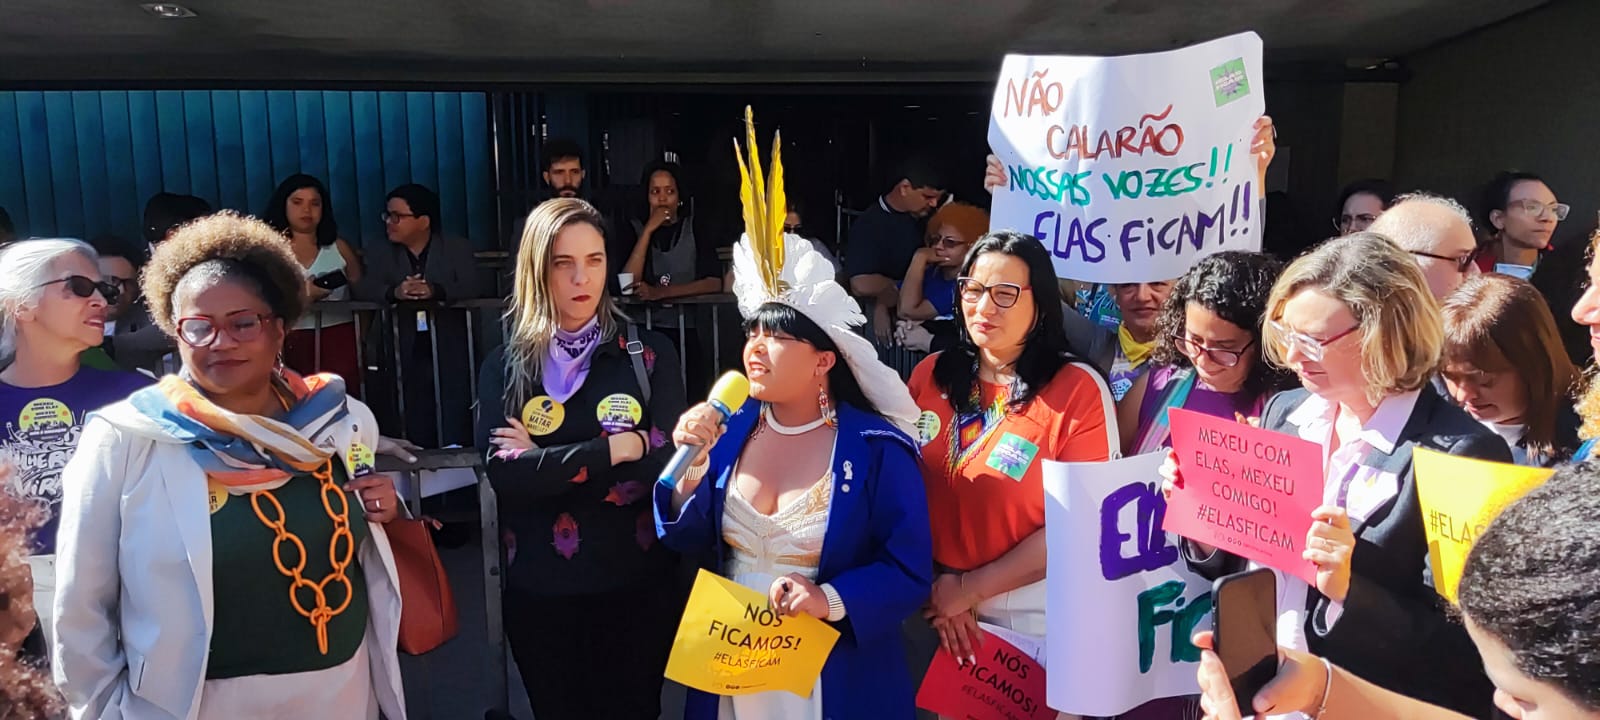 “Elas ficam”: campanha nacional defende as seis deputadas que enfrentam pedido de cassação